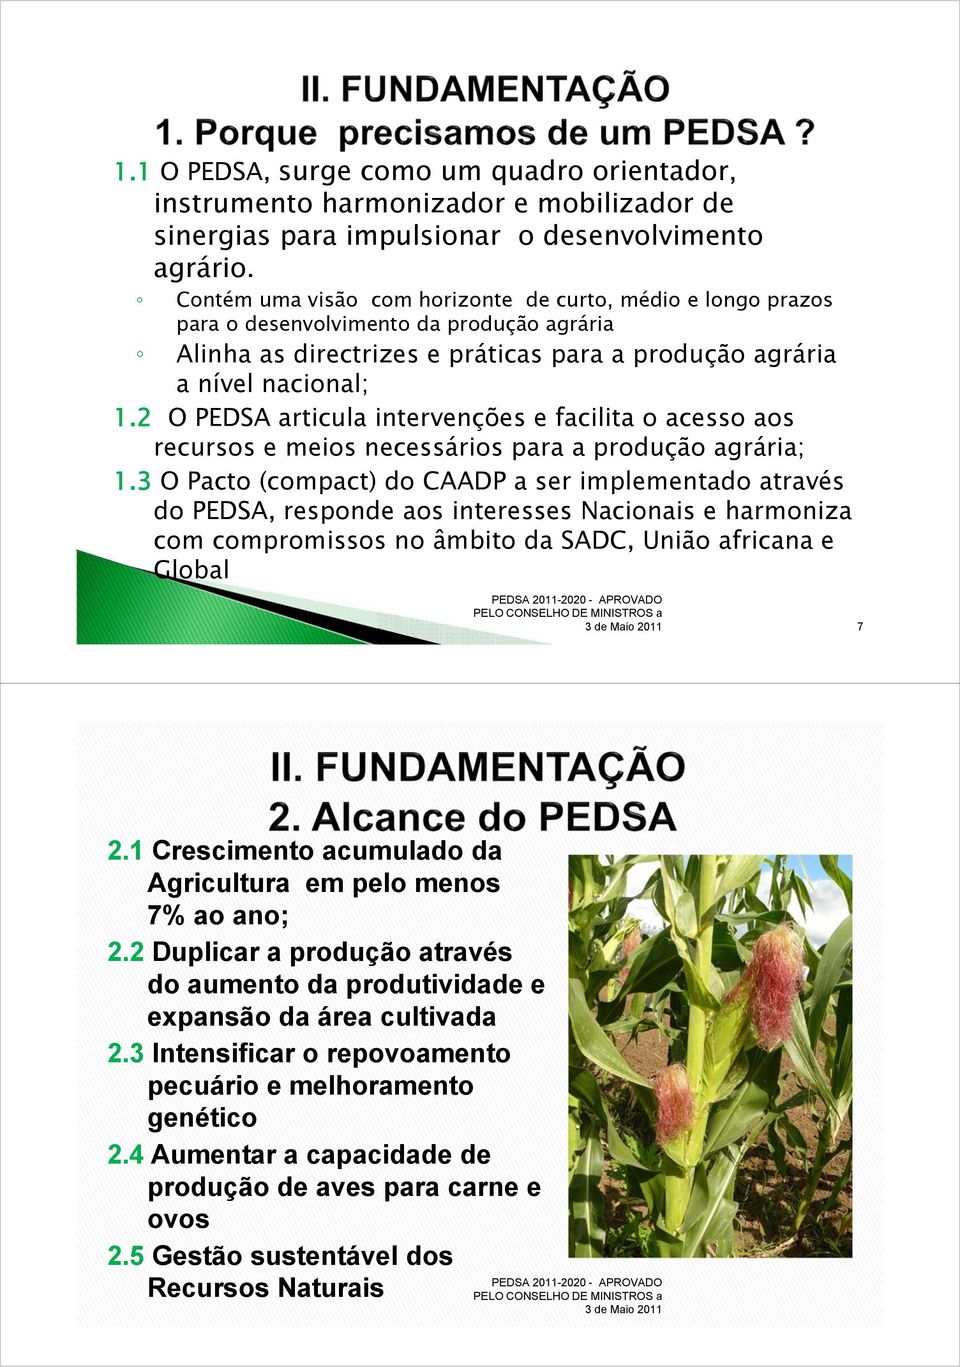 2 O PEDSA articula intervenções e facilita o acesso aos recursos e meios necessários para a produção agrária; 1.